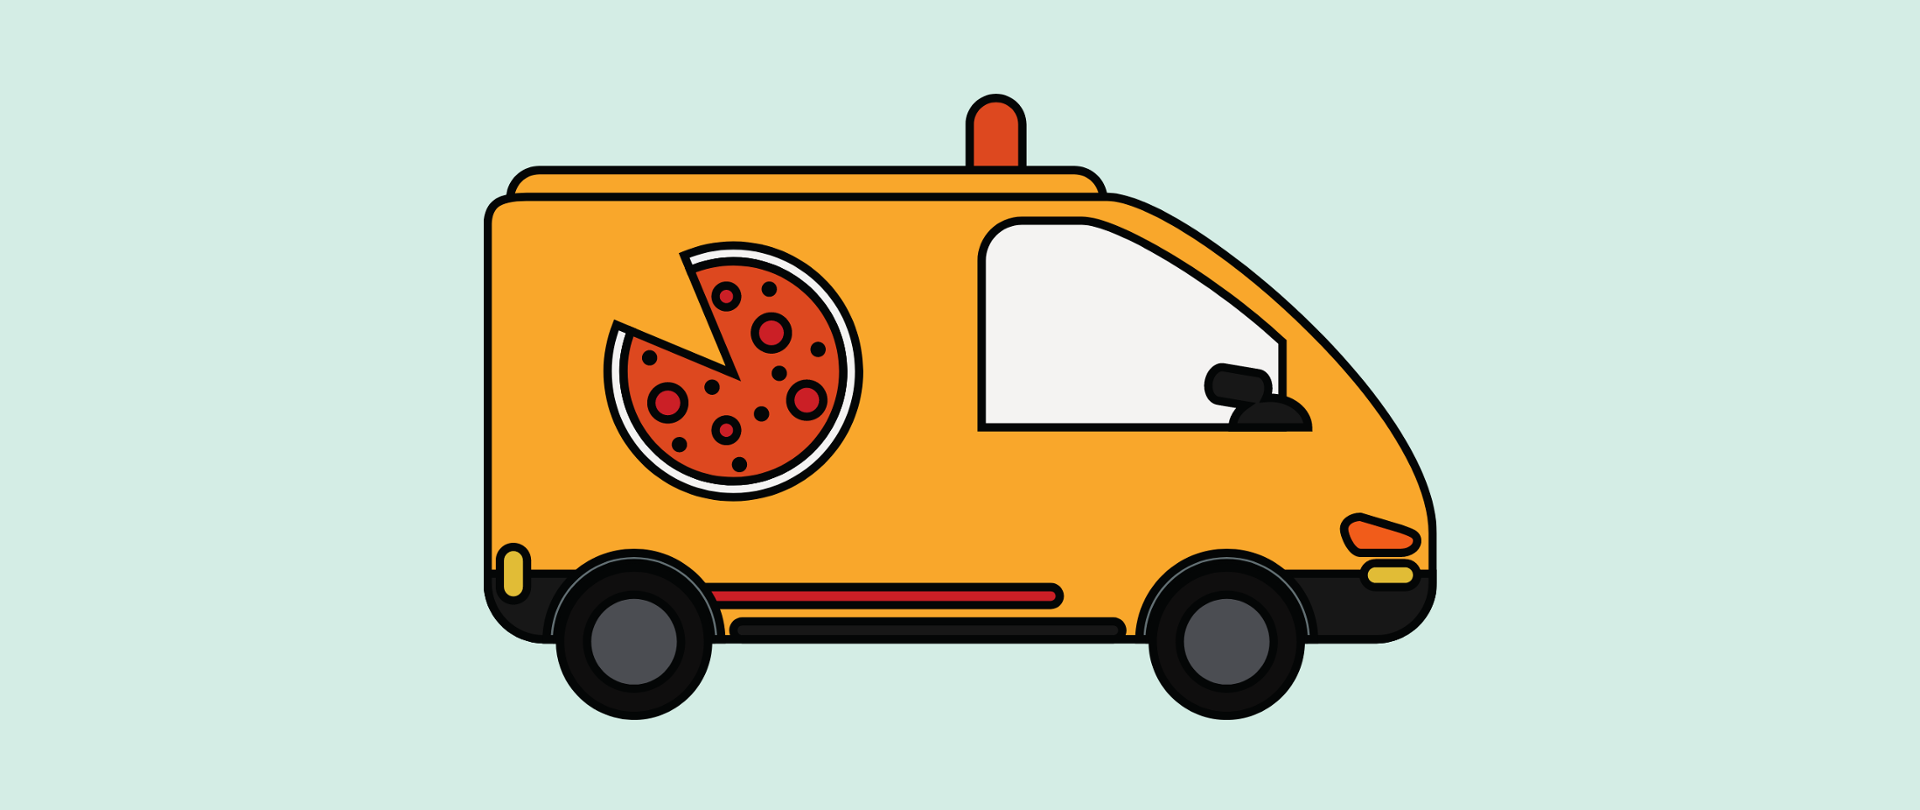 Grafika wektorowa przedstawiająca pomarańczową furgonetkę z rysunkiem pizzy. 